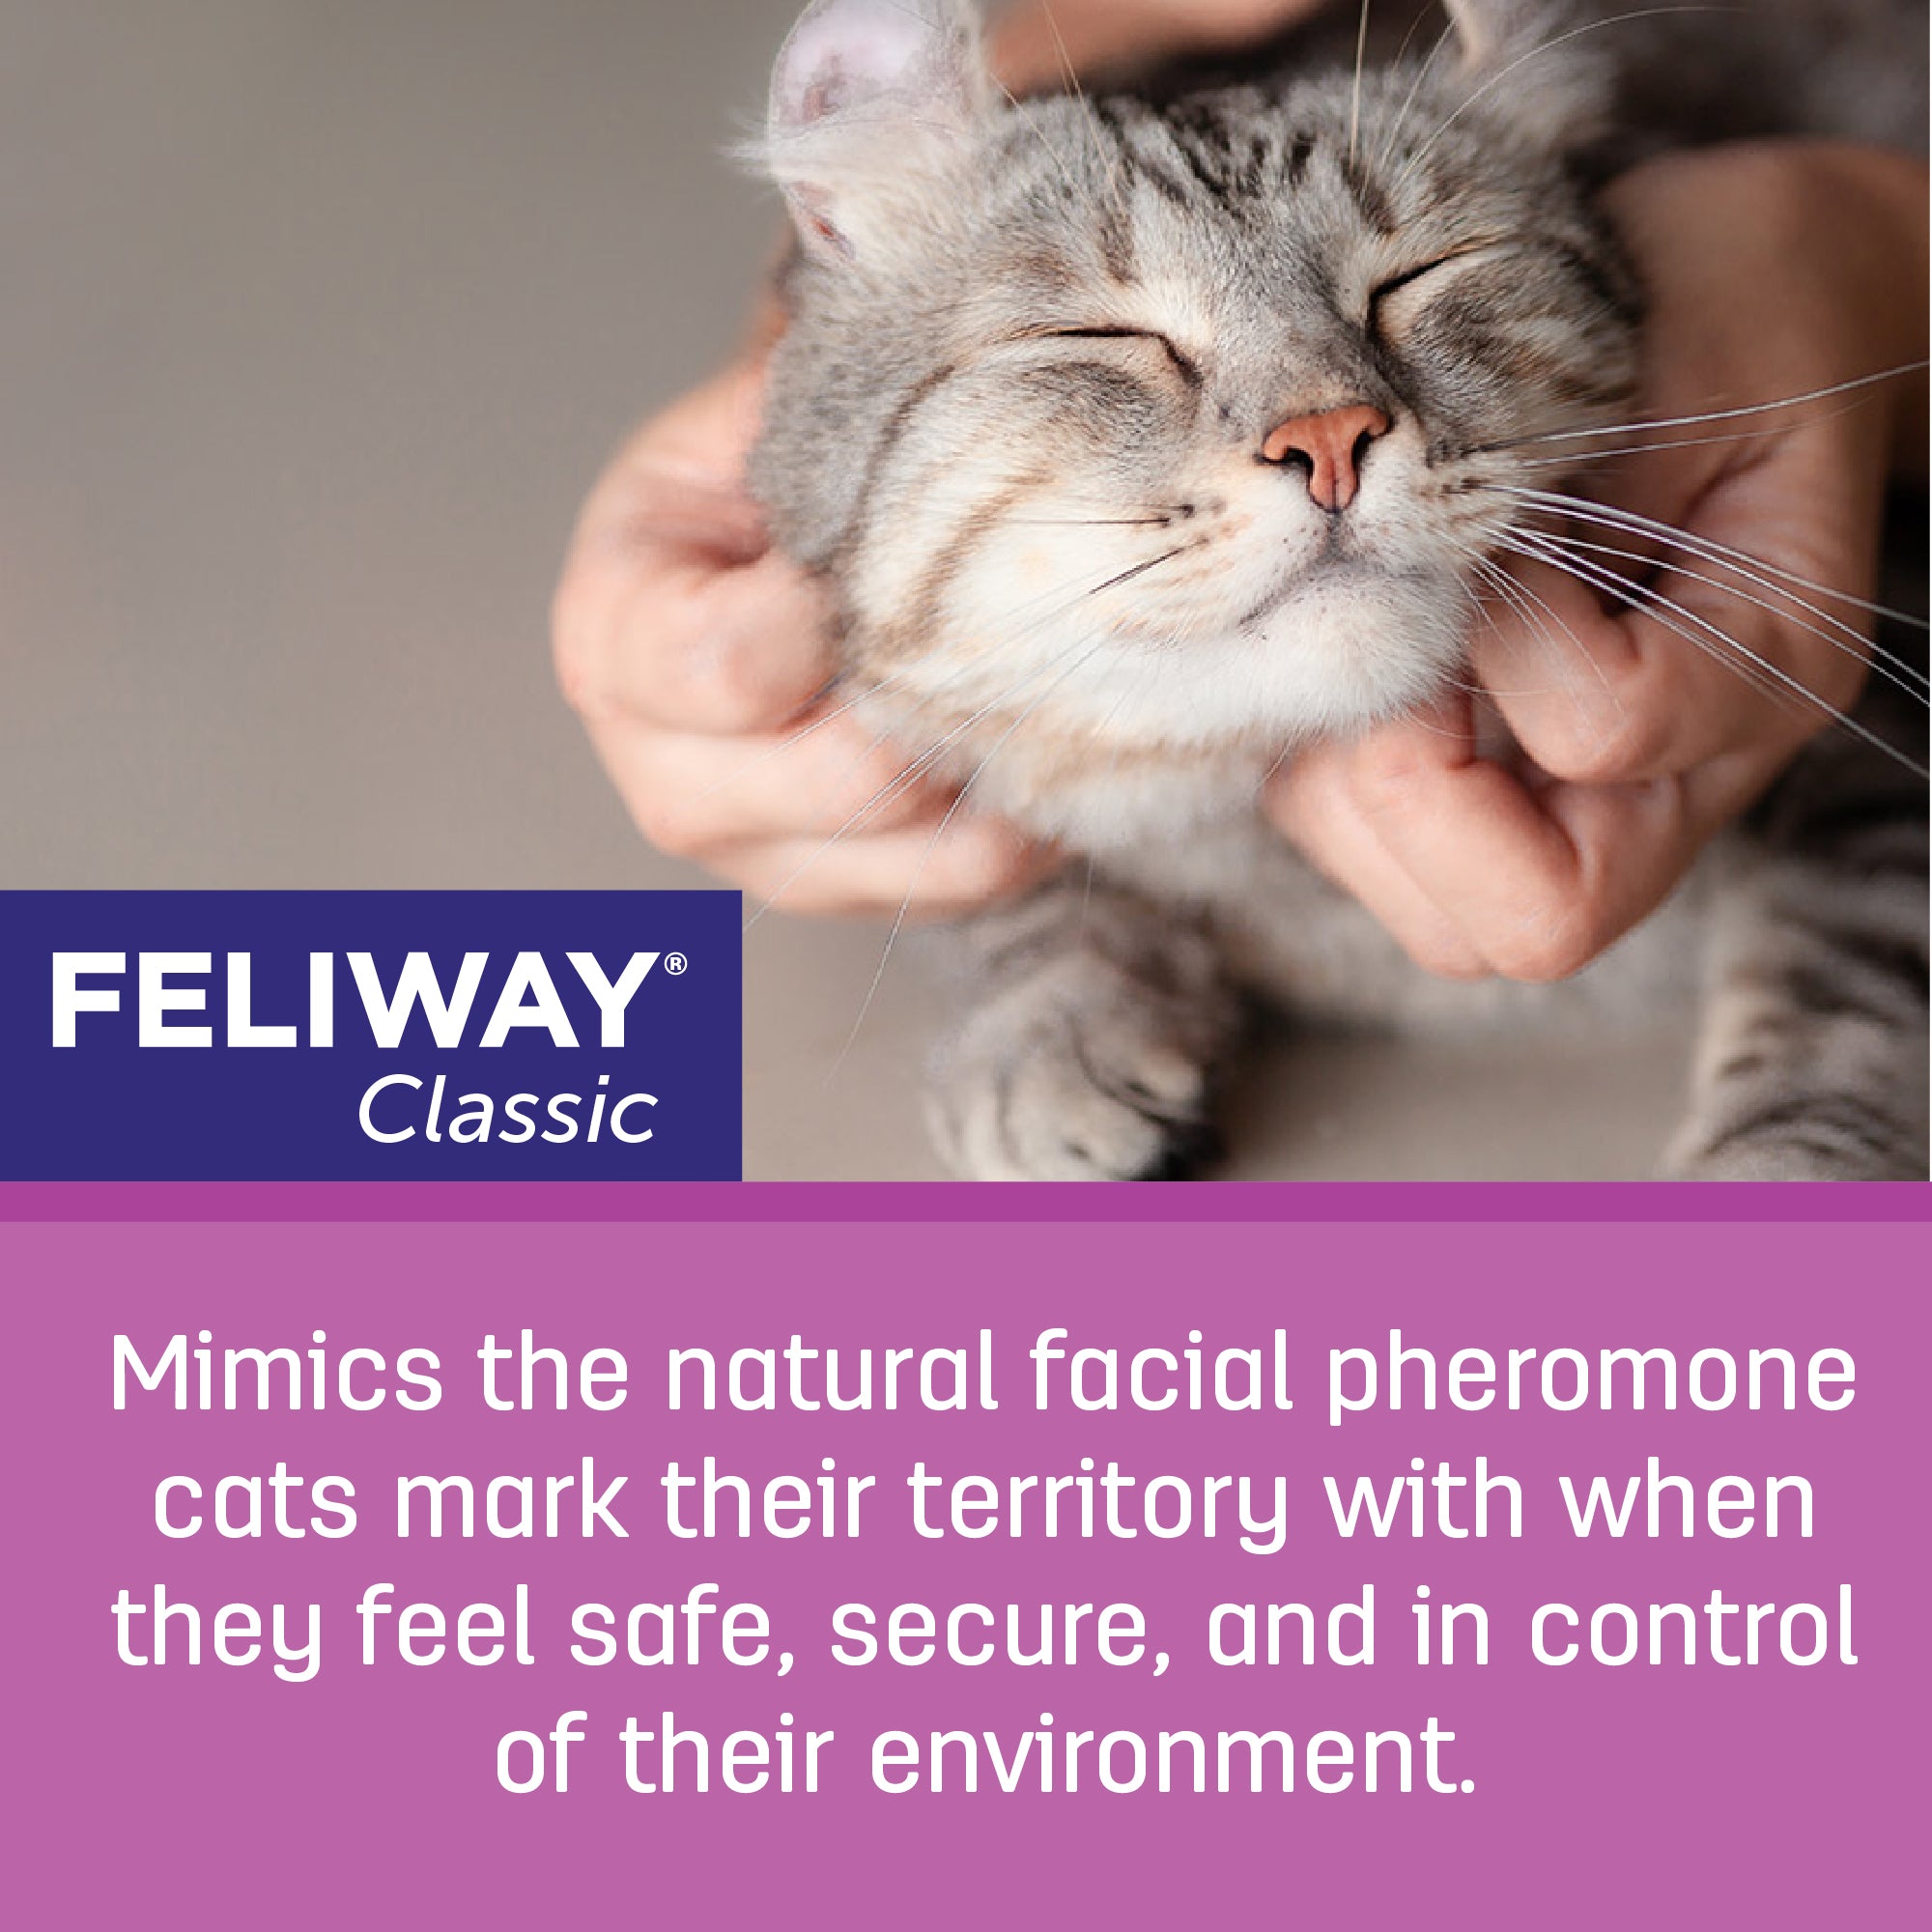 Feliway Multicat Happy Cats Calming Diffuser Refill